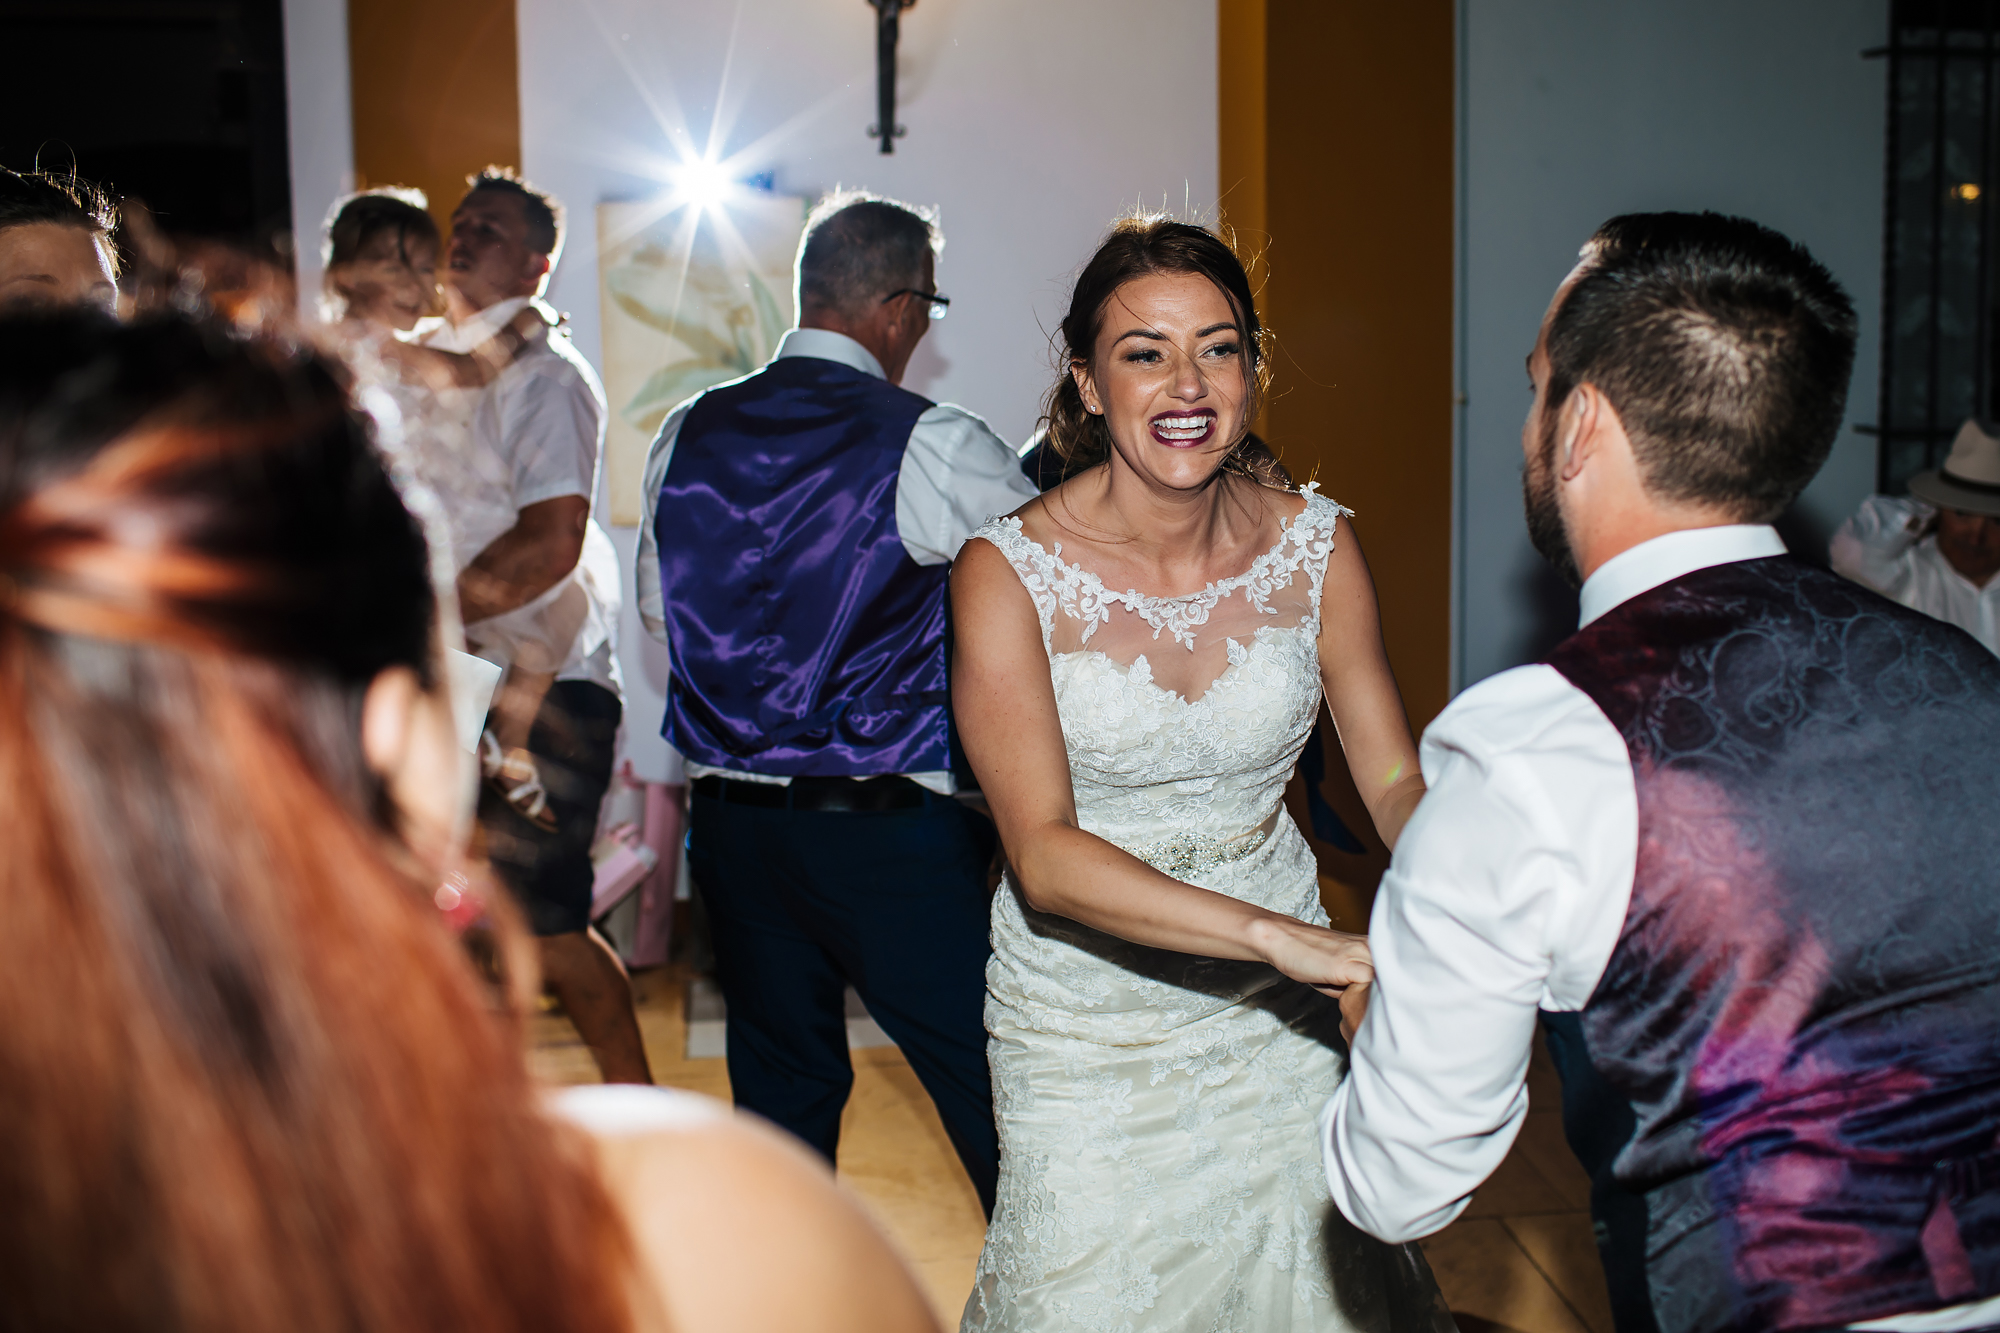 Dancing at a wedding in Nerja Spain